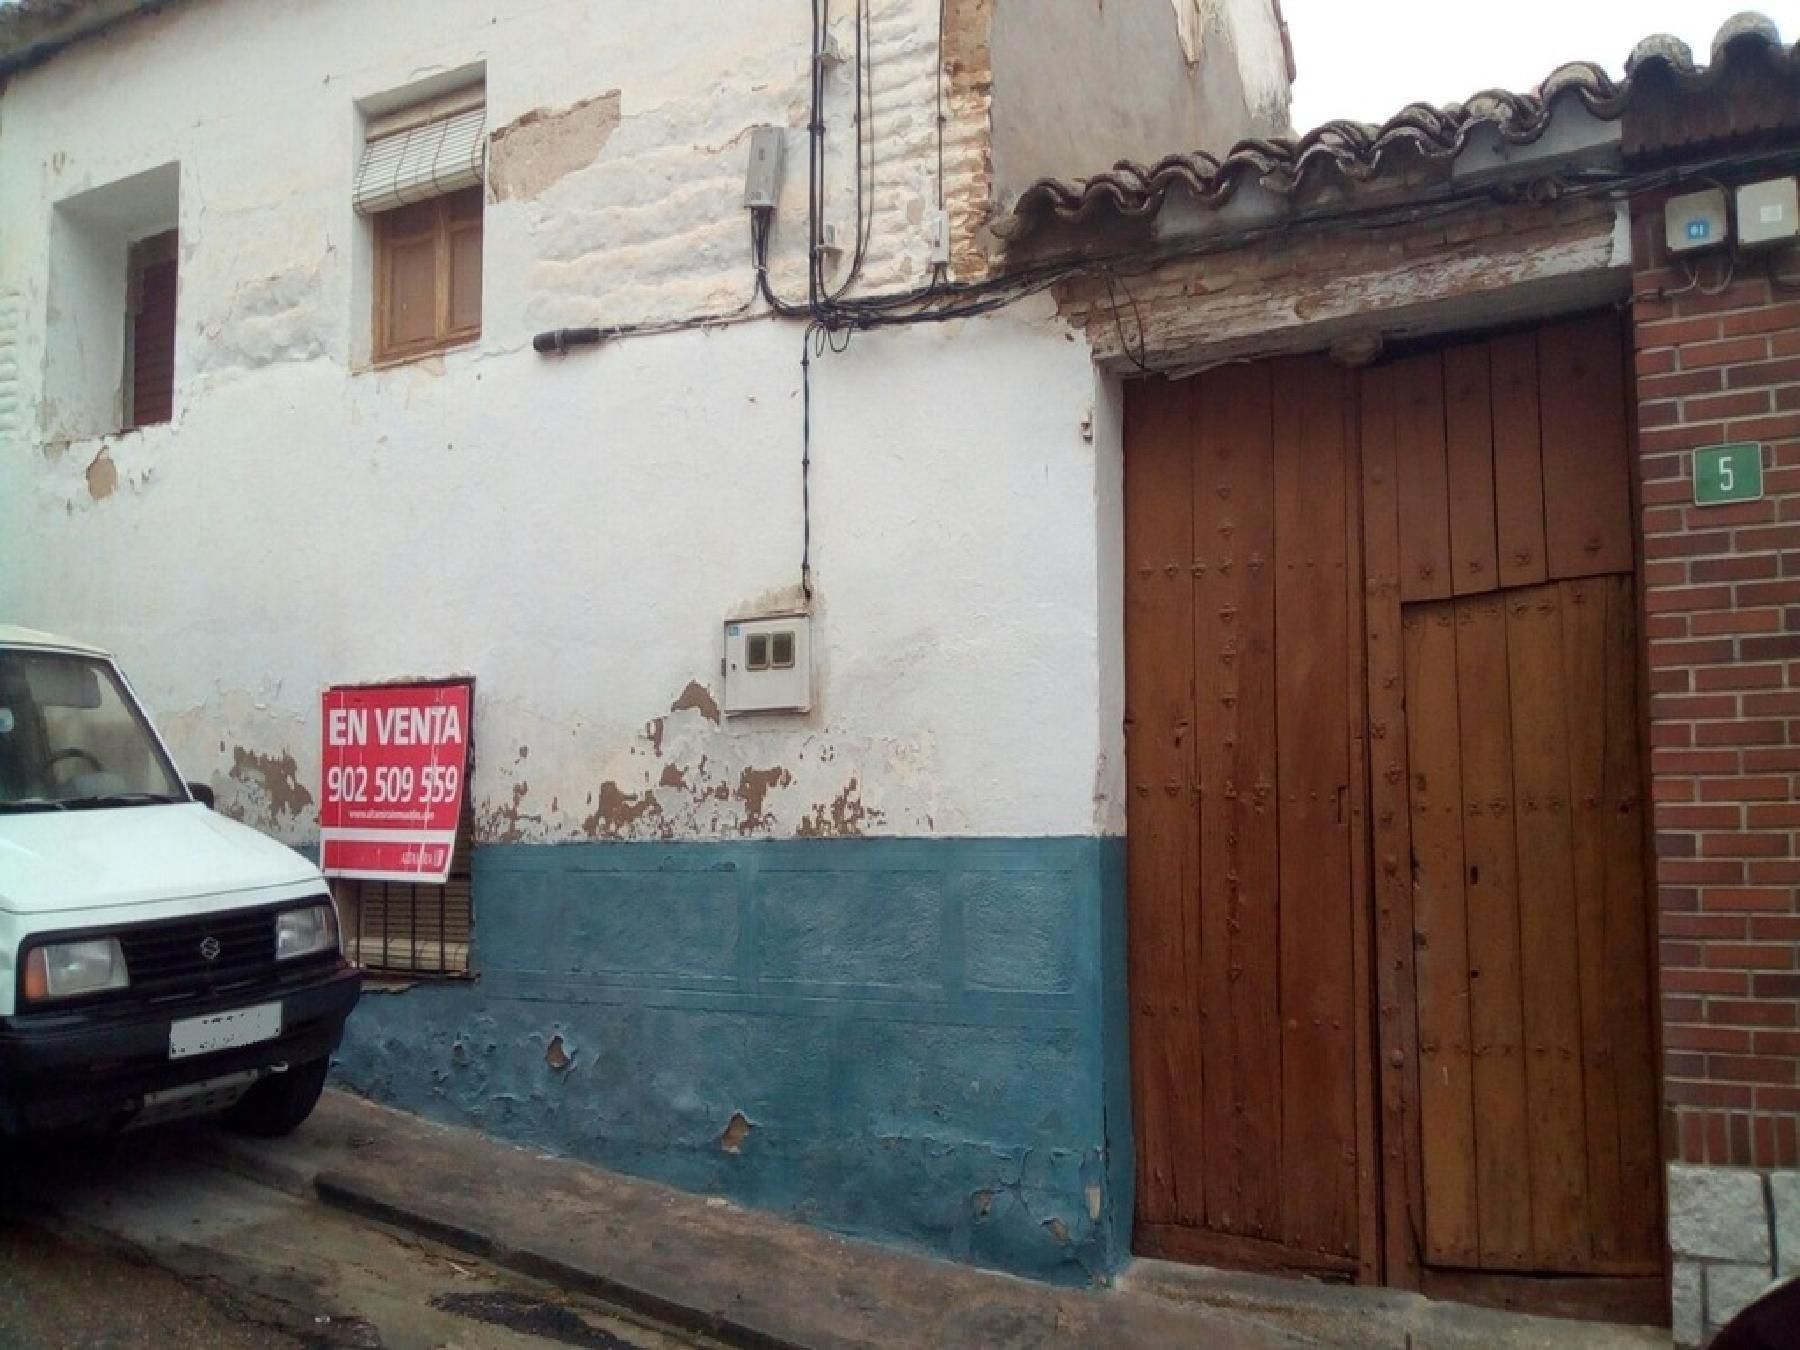 59 Viviendas y casas en venta en La Puebla de Montalbán | fotocasa